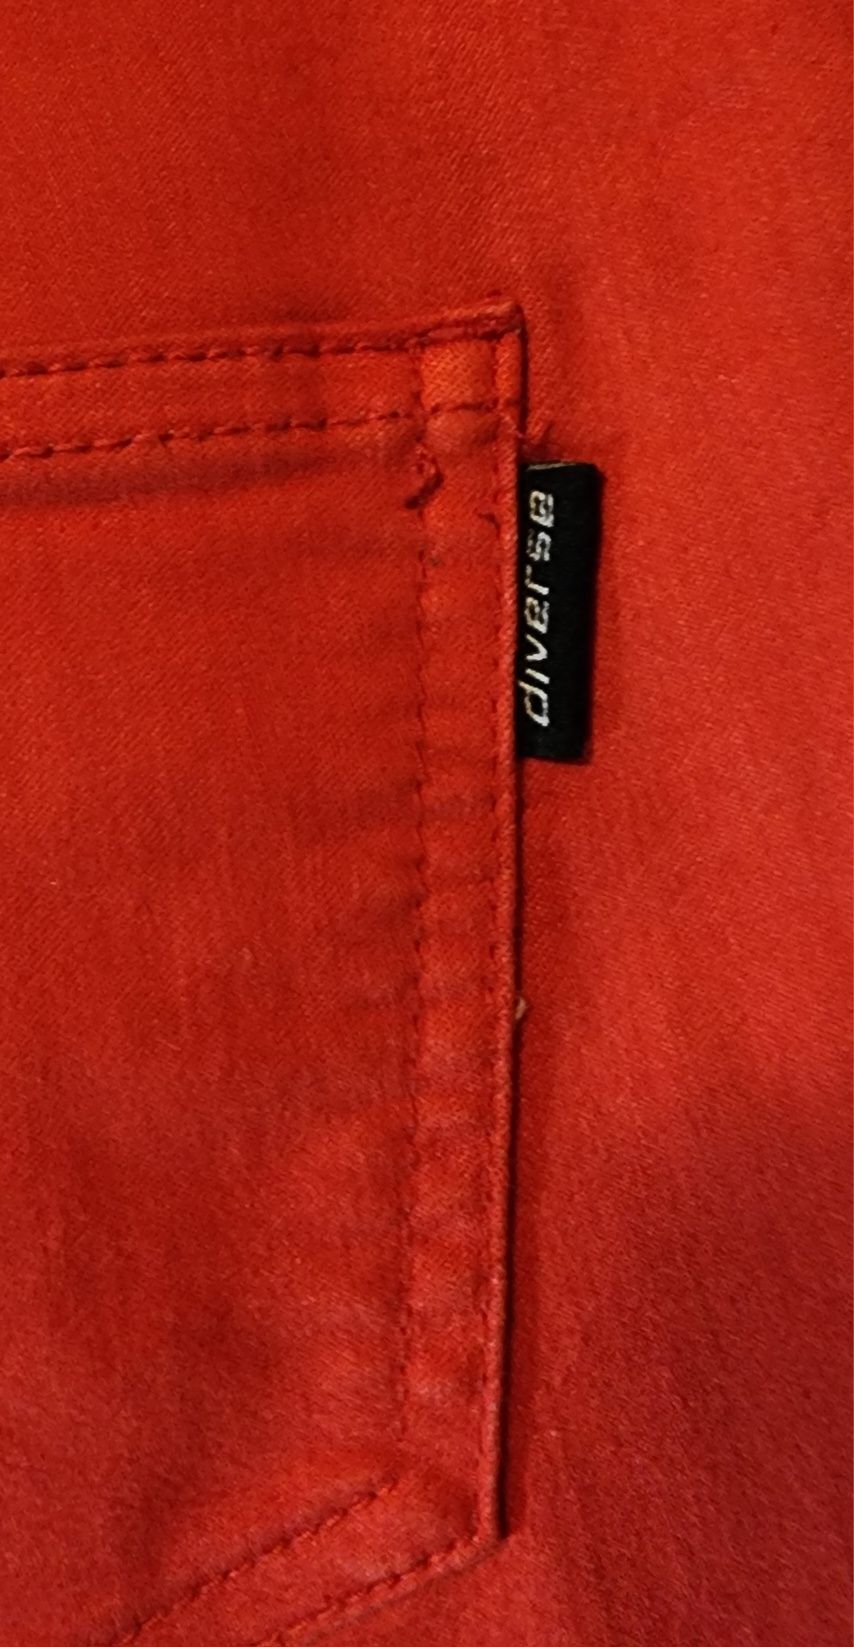 Spodnie damskie DIVERSE, czerwone